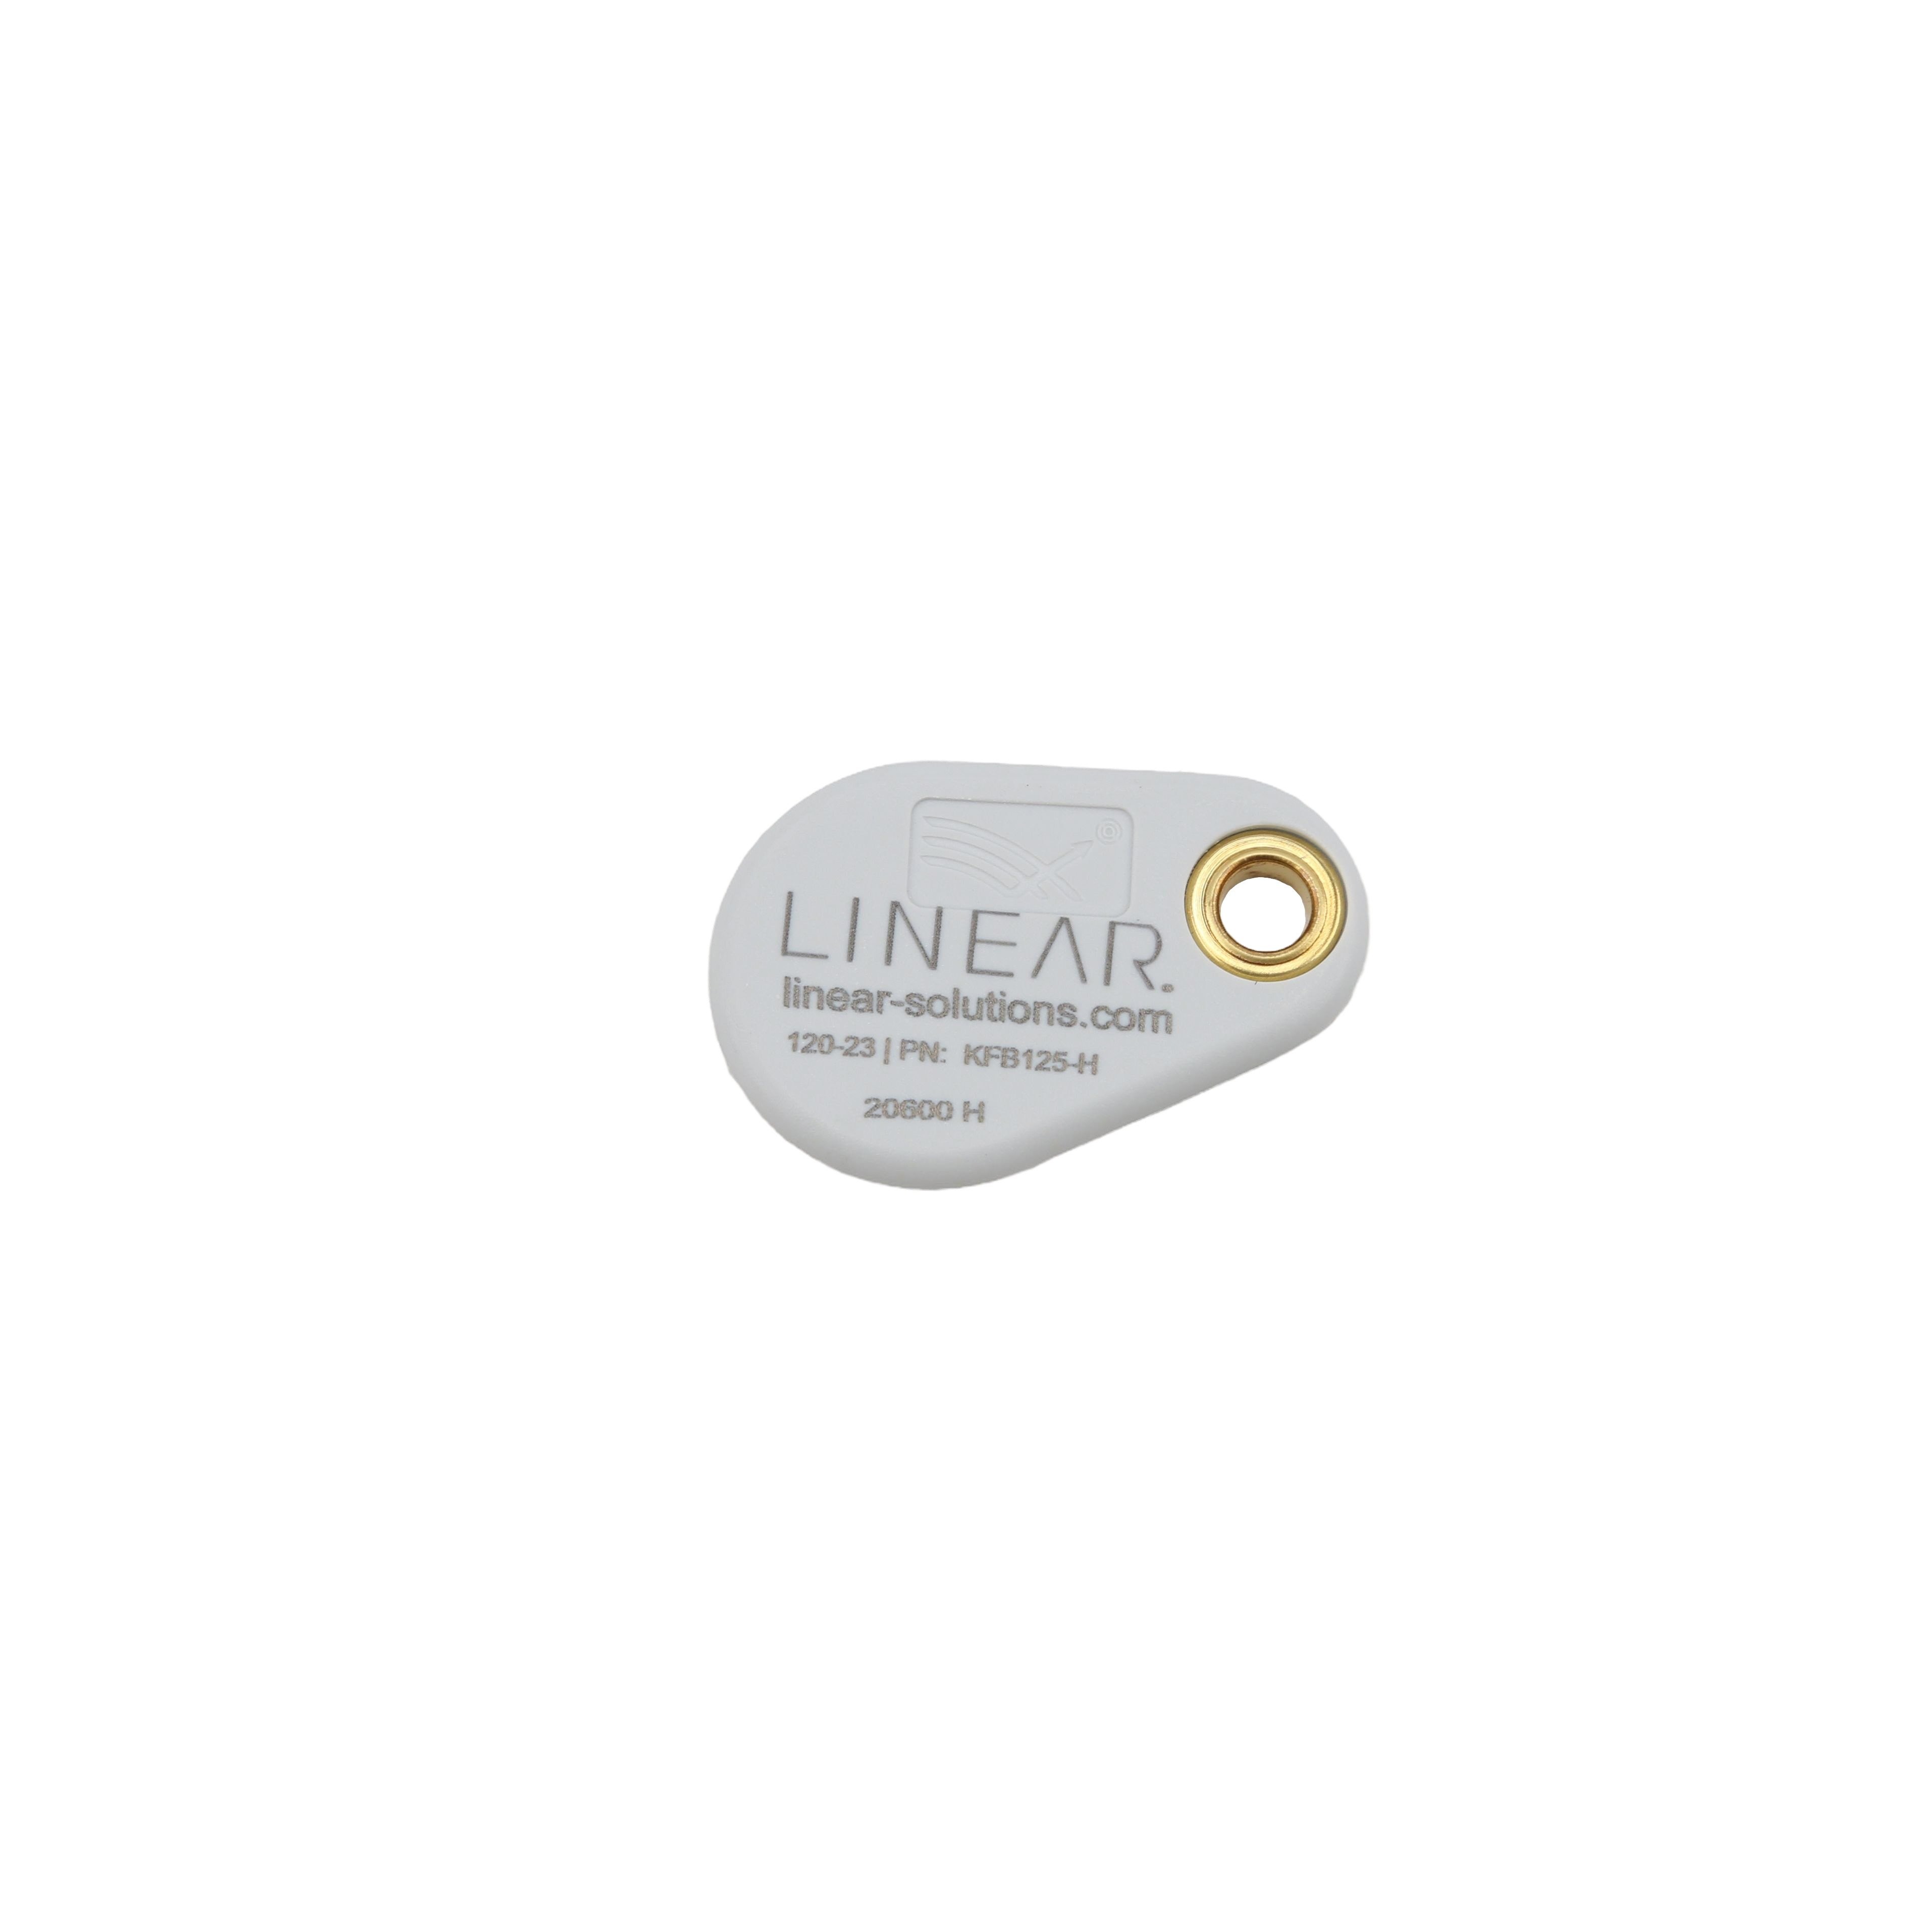 Linear IEI ProxKey Wiegand 125 kHz HID Compatible Proximity Key